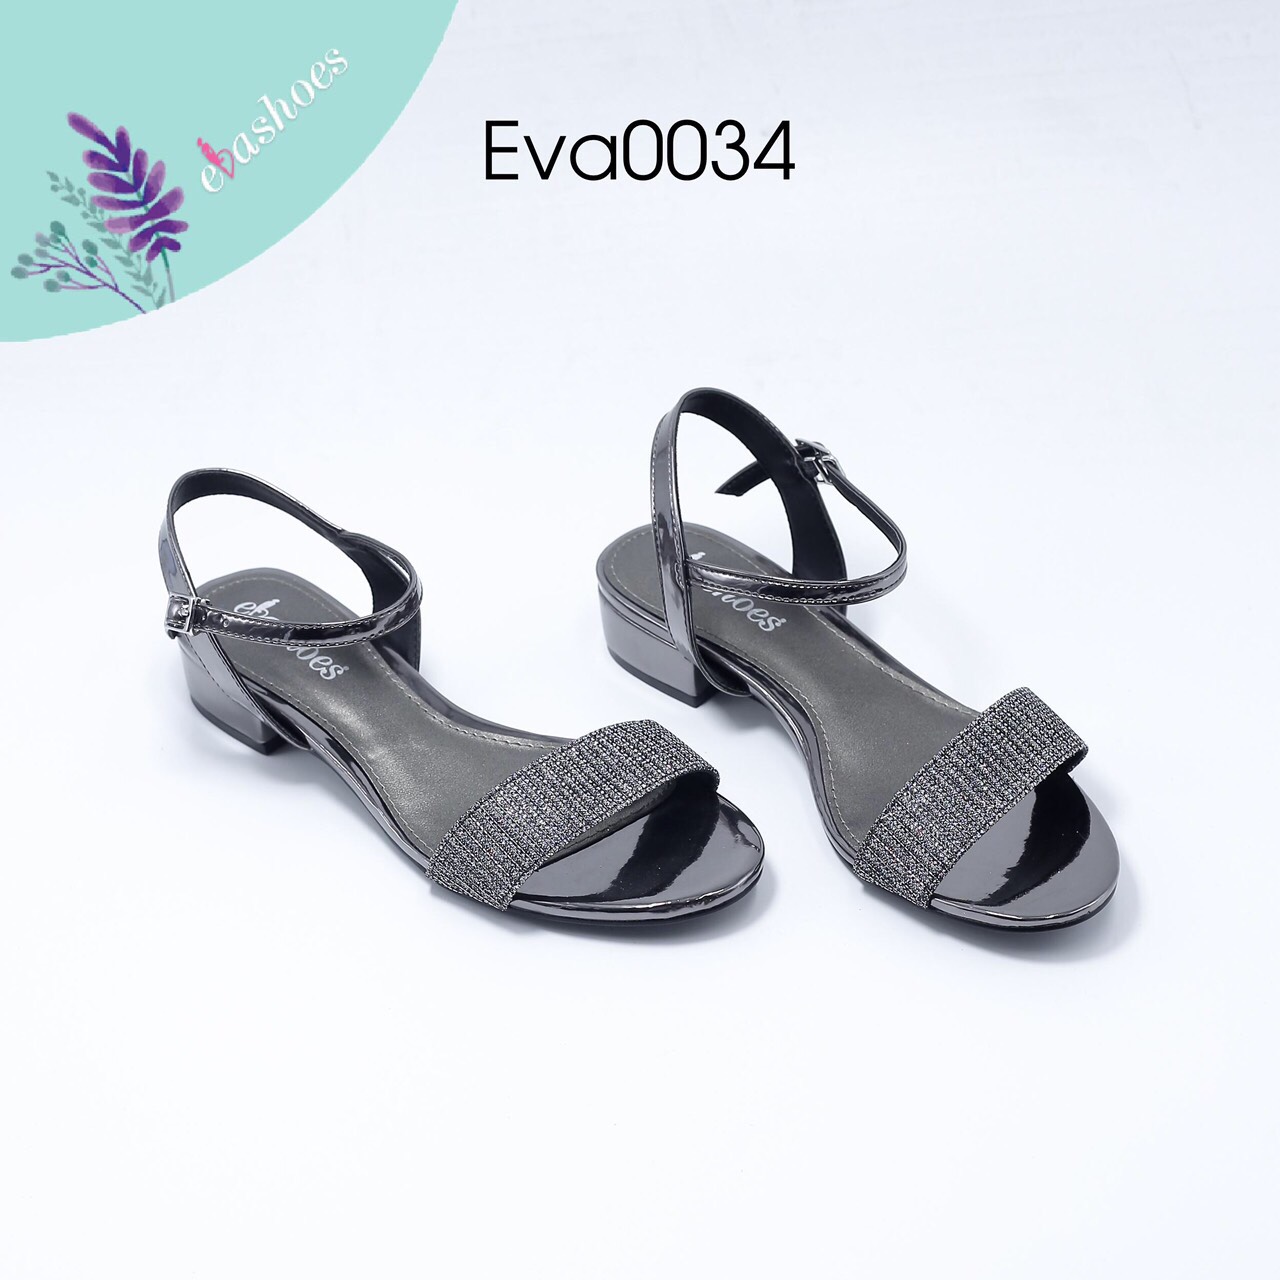 Sandal cao gót EVA0034